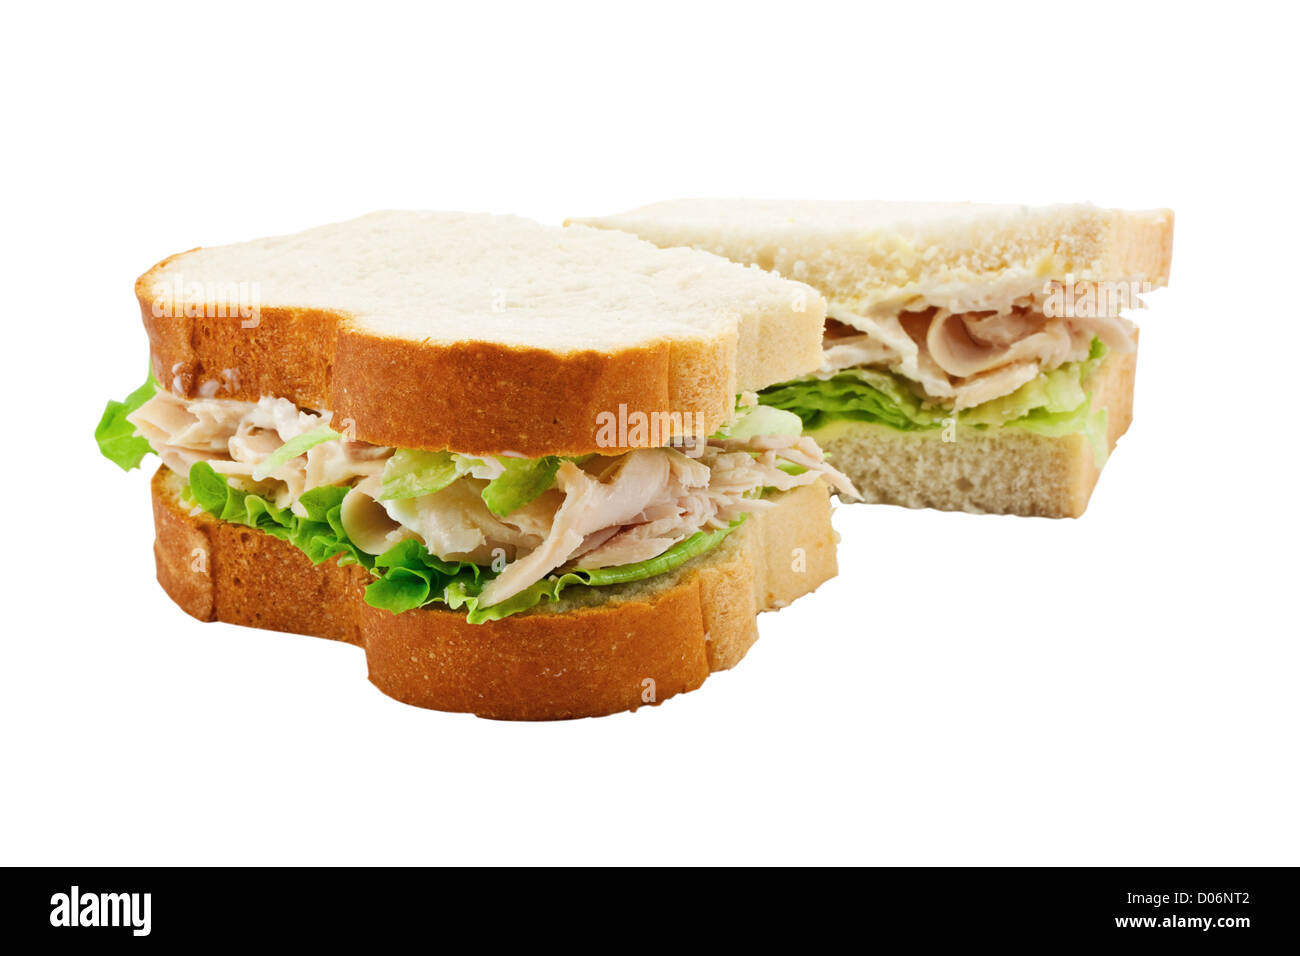 Una Turchia insalata sandwich made di fresco con fette di pane tagliato a metà con il focus sul riempimento Foto Stock